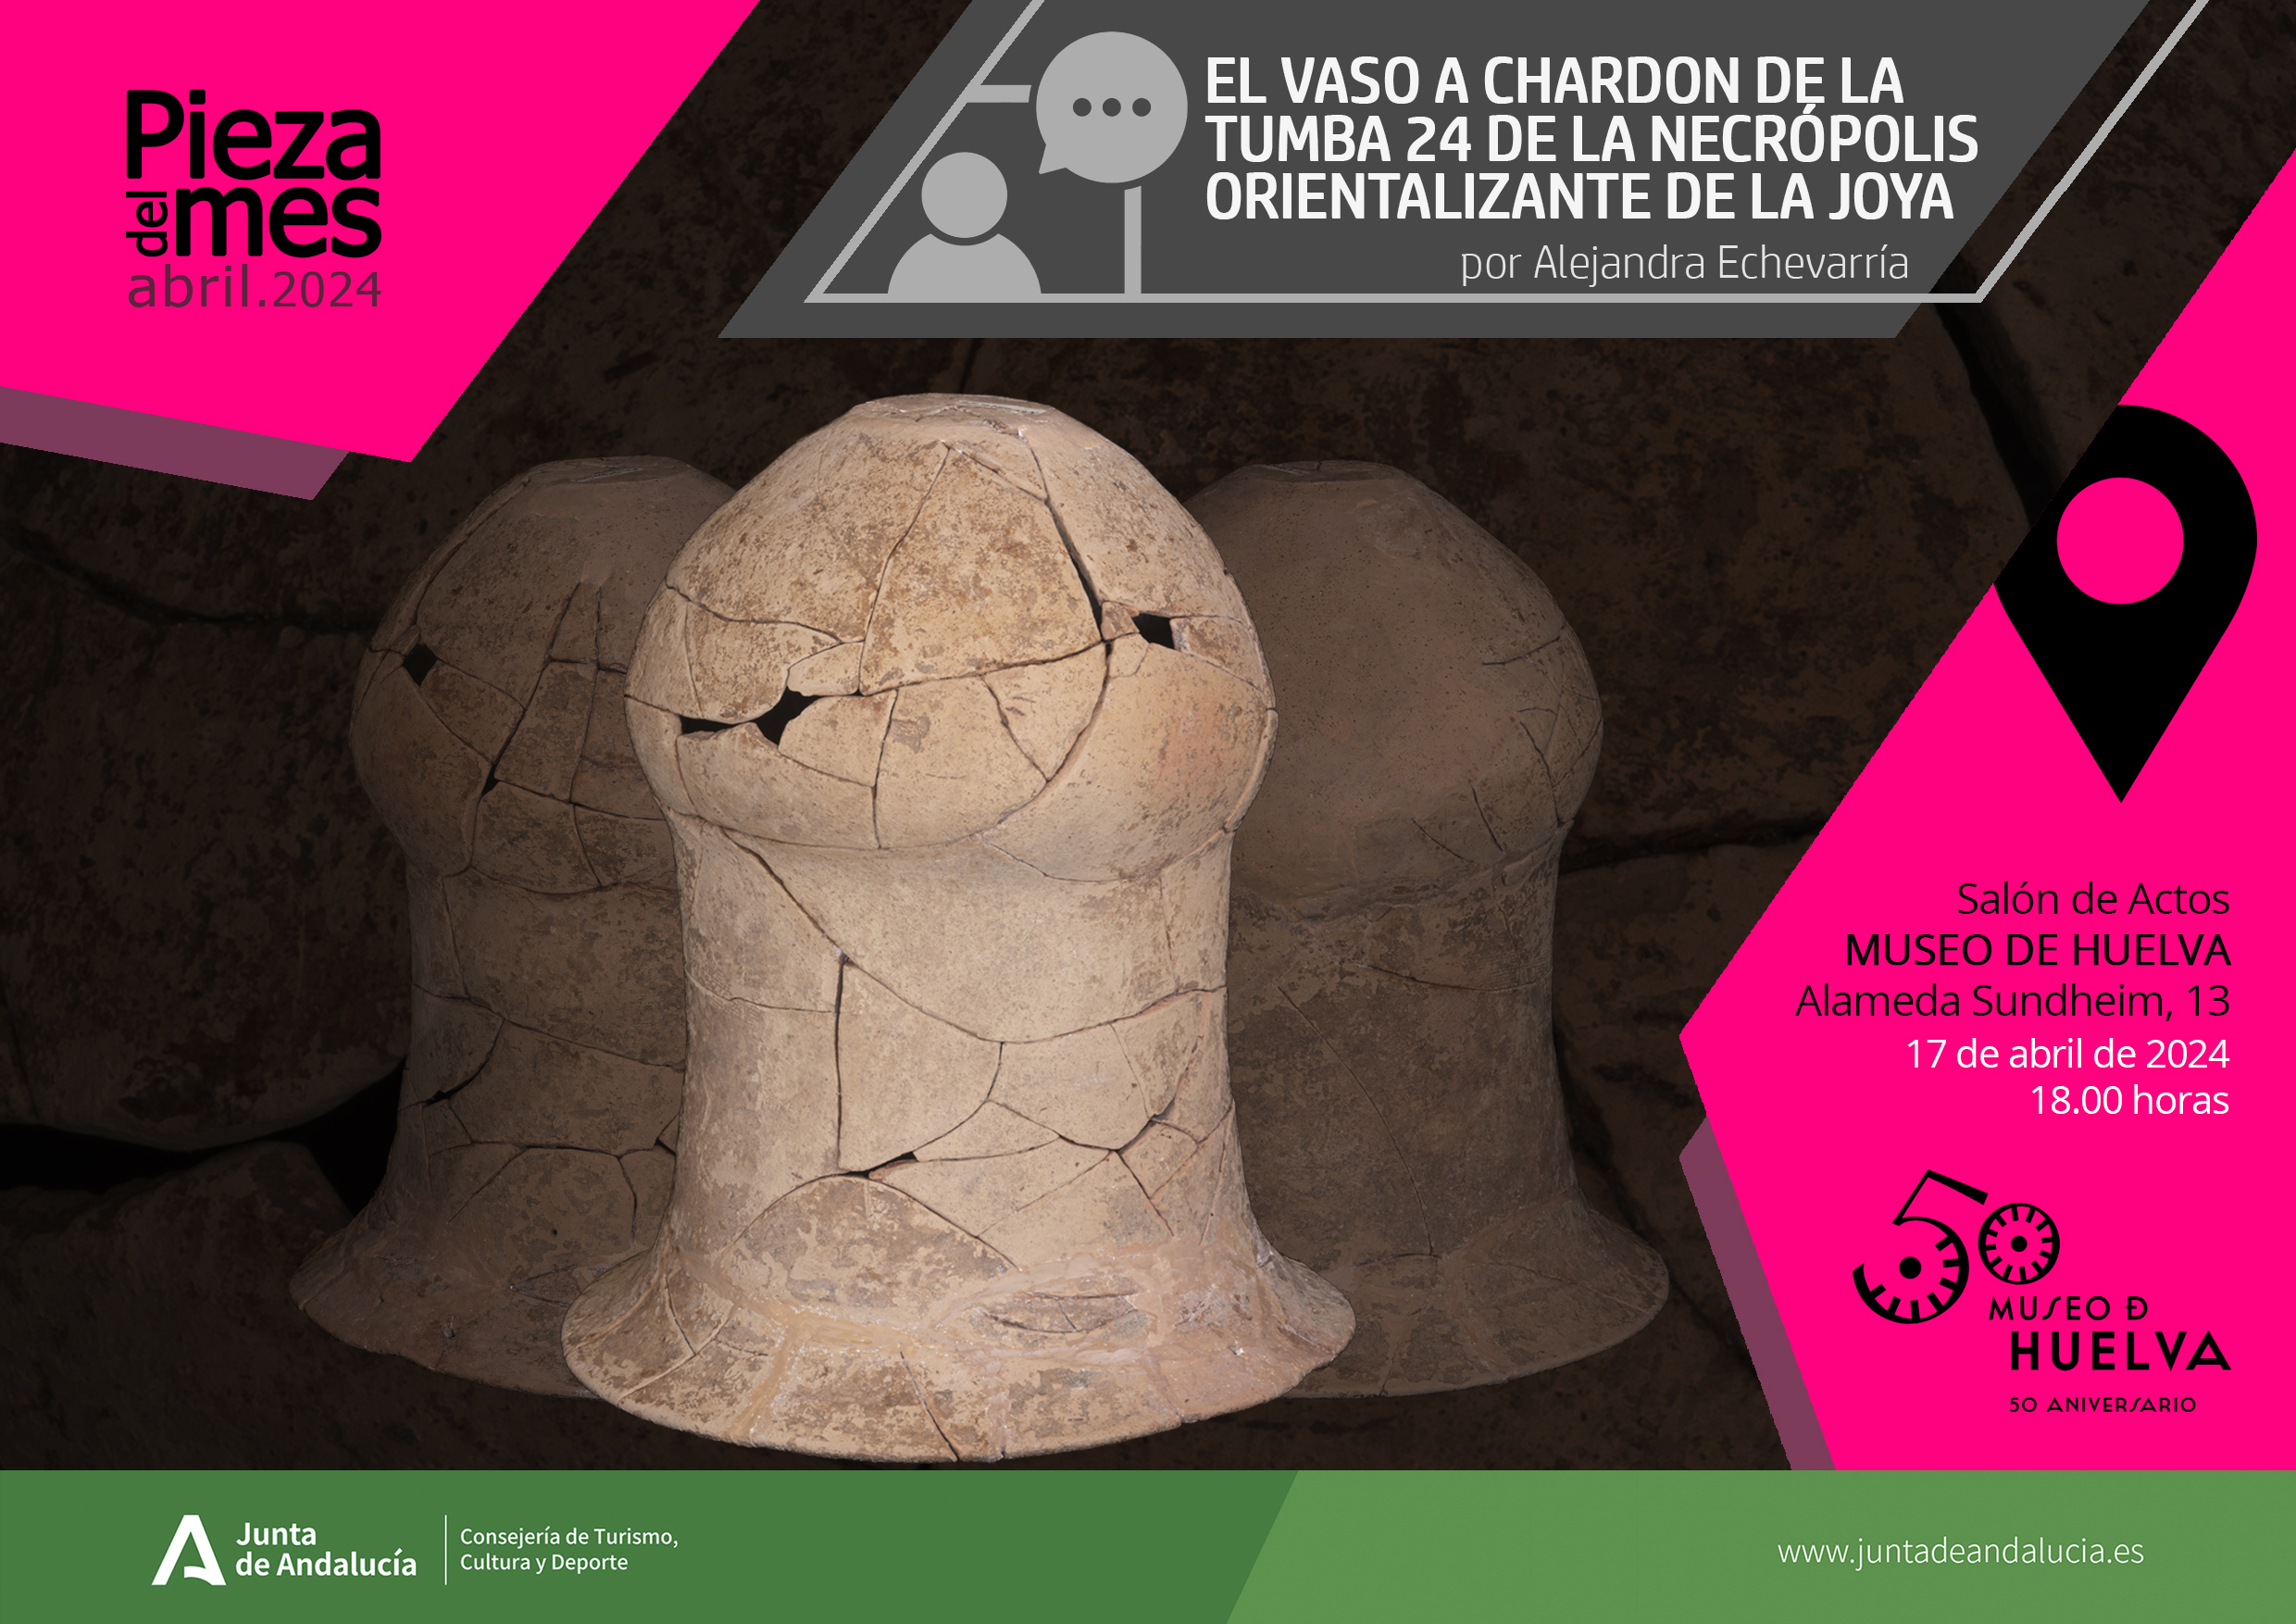 ¿El vaso a chardon de la tumba 24 de la Necrópolis orientalizante de La Joya¿ por Alejandra Echevarría